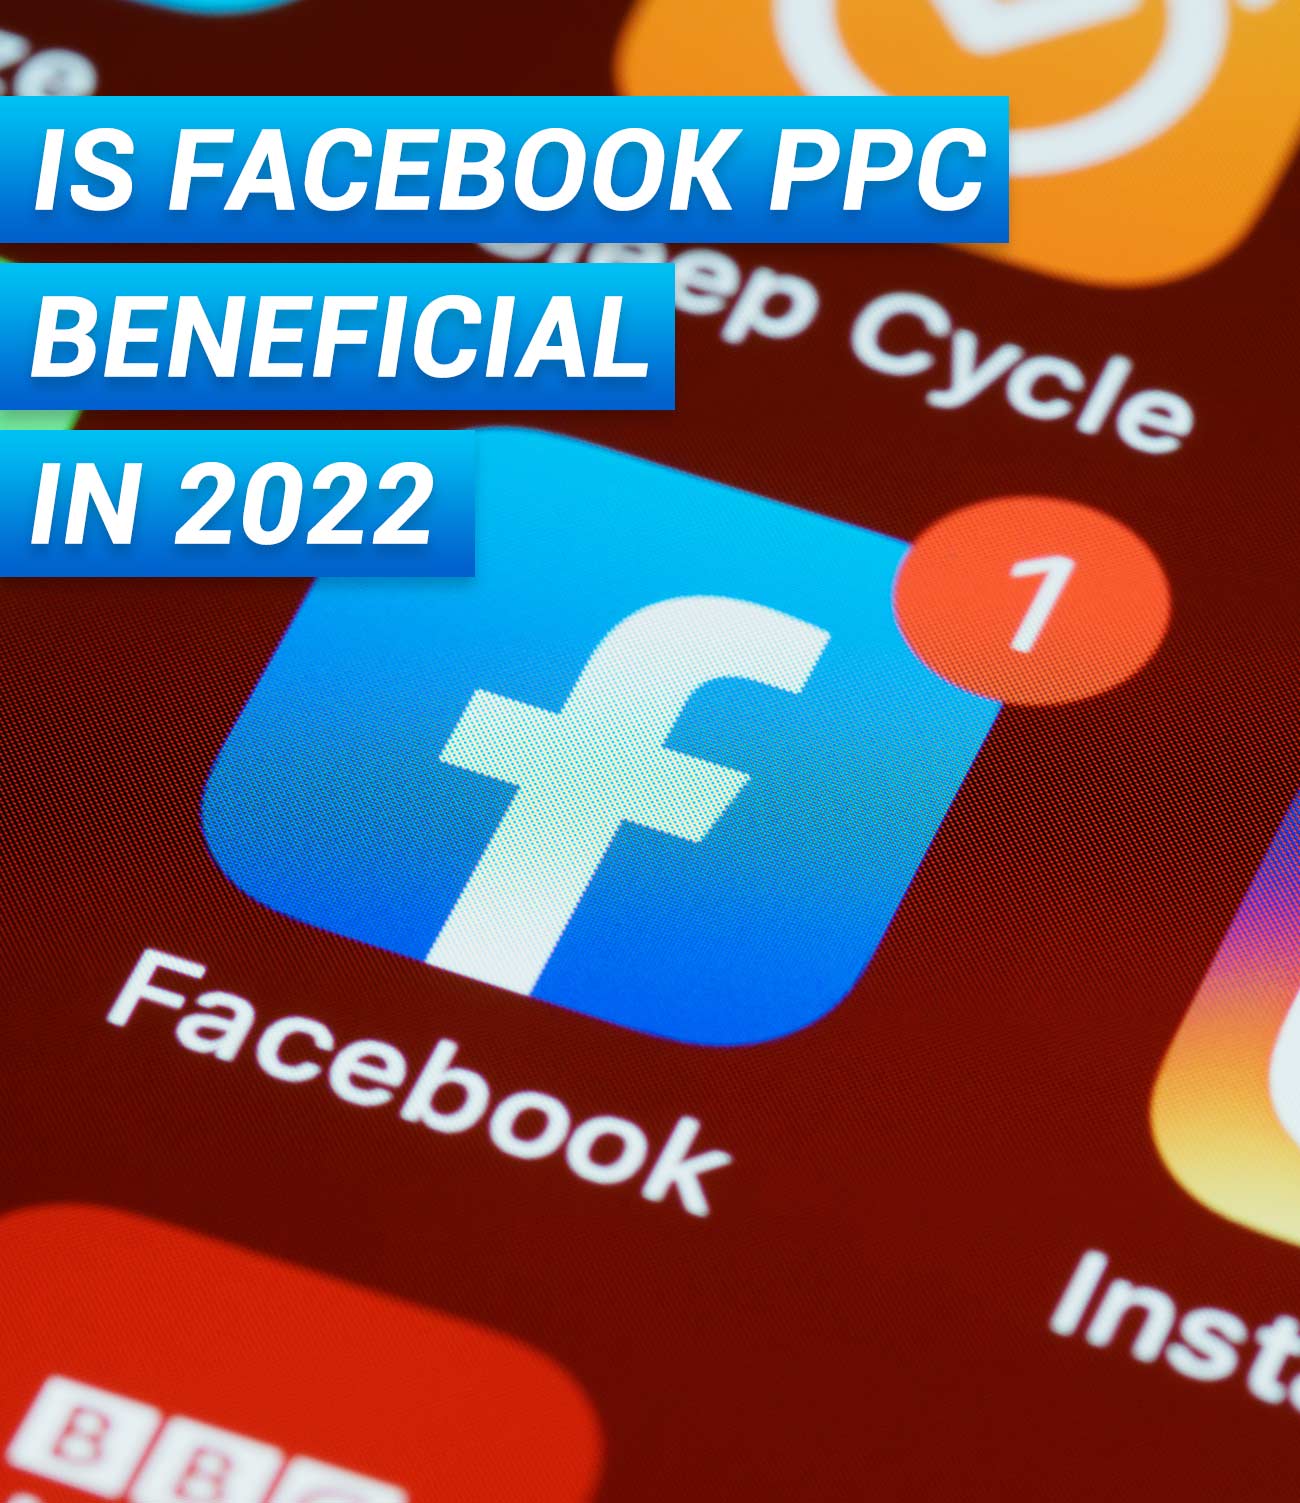 Facebook PPC in 2022